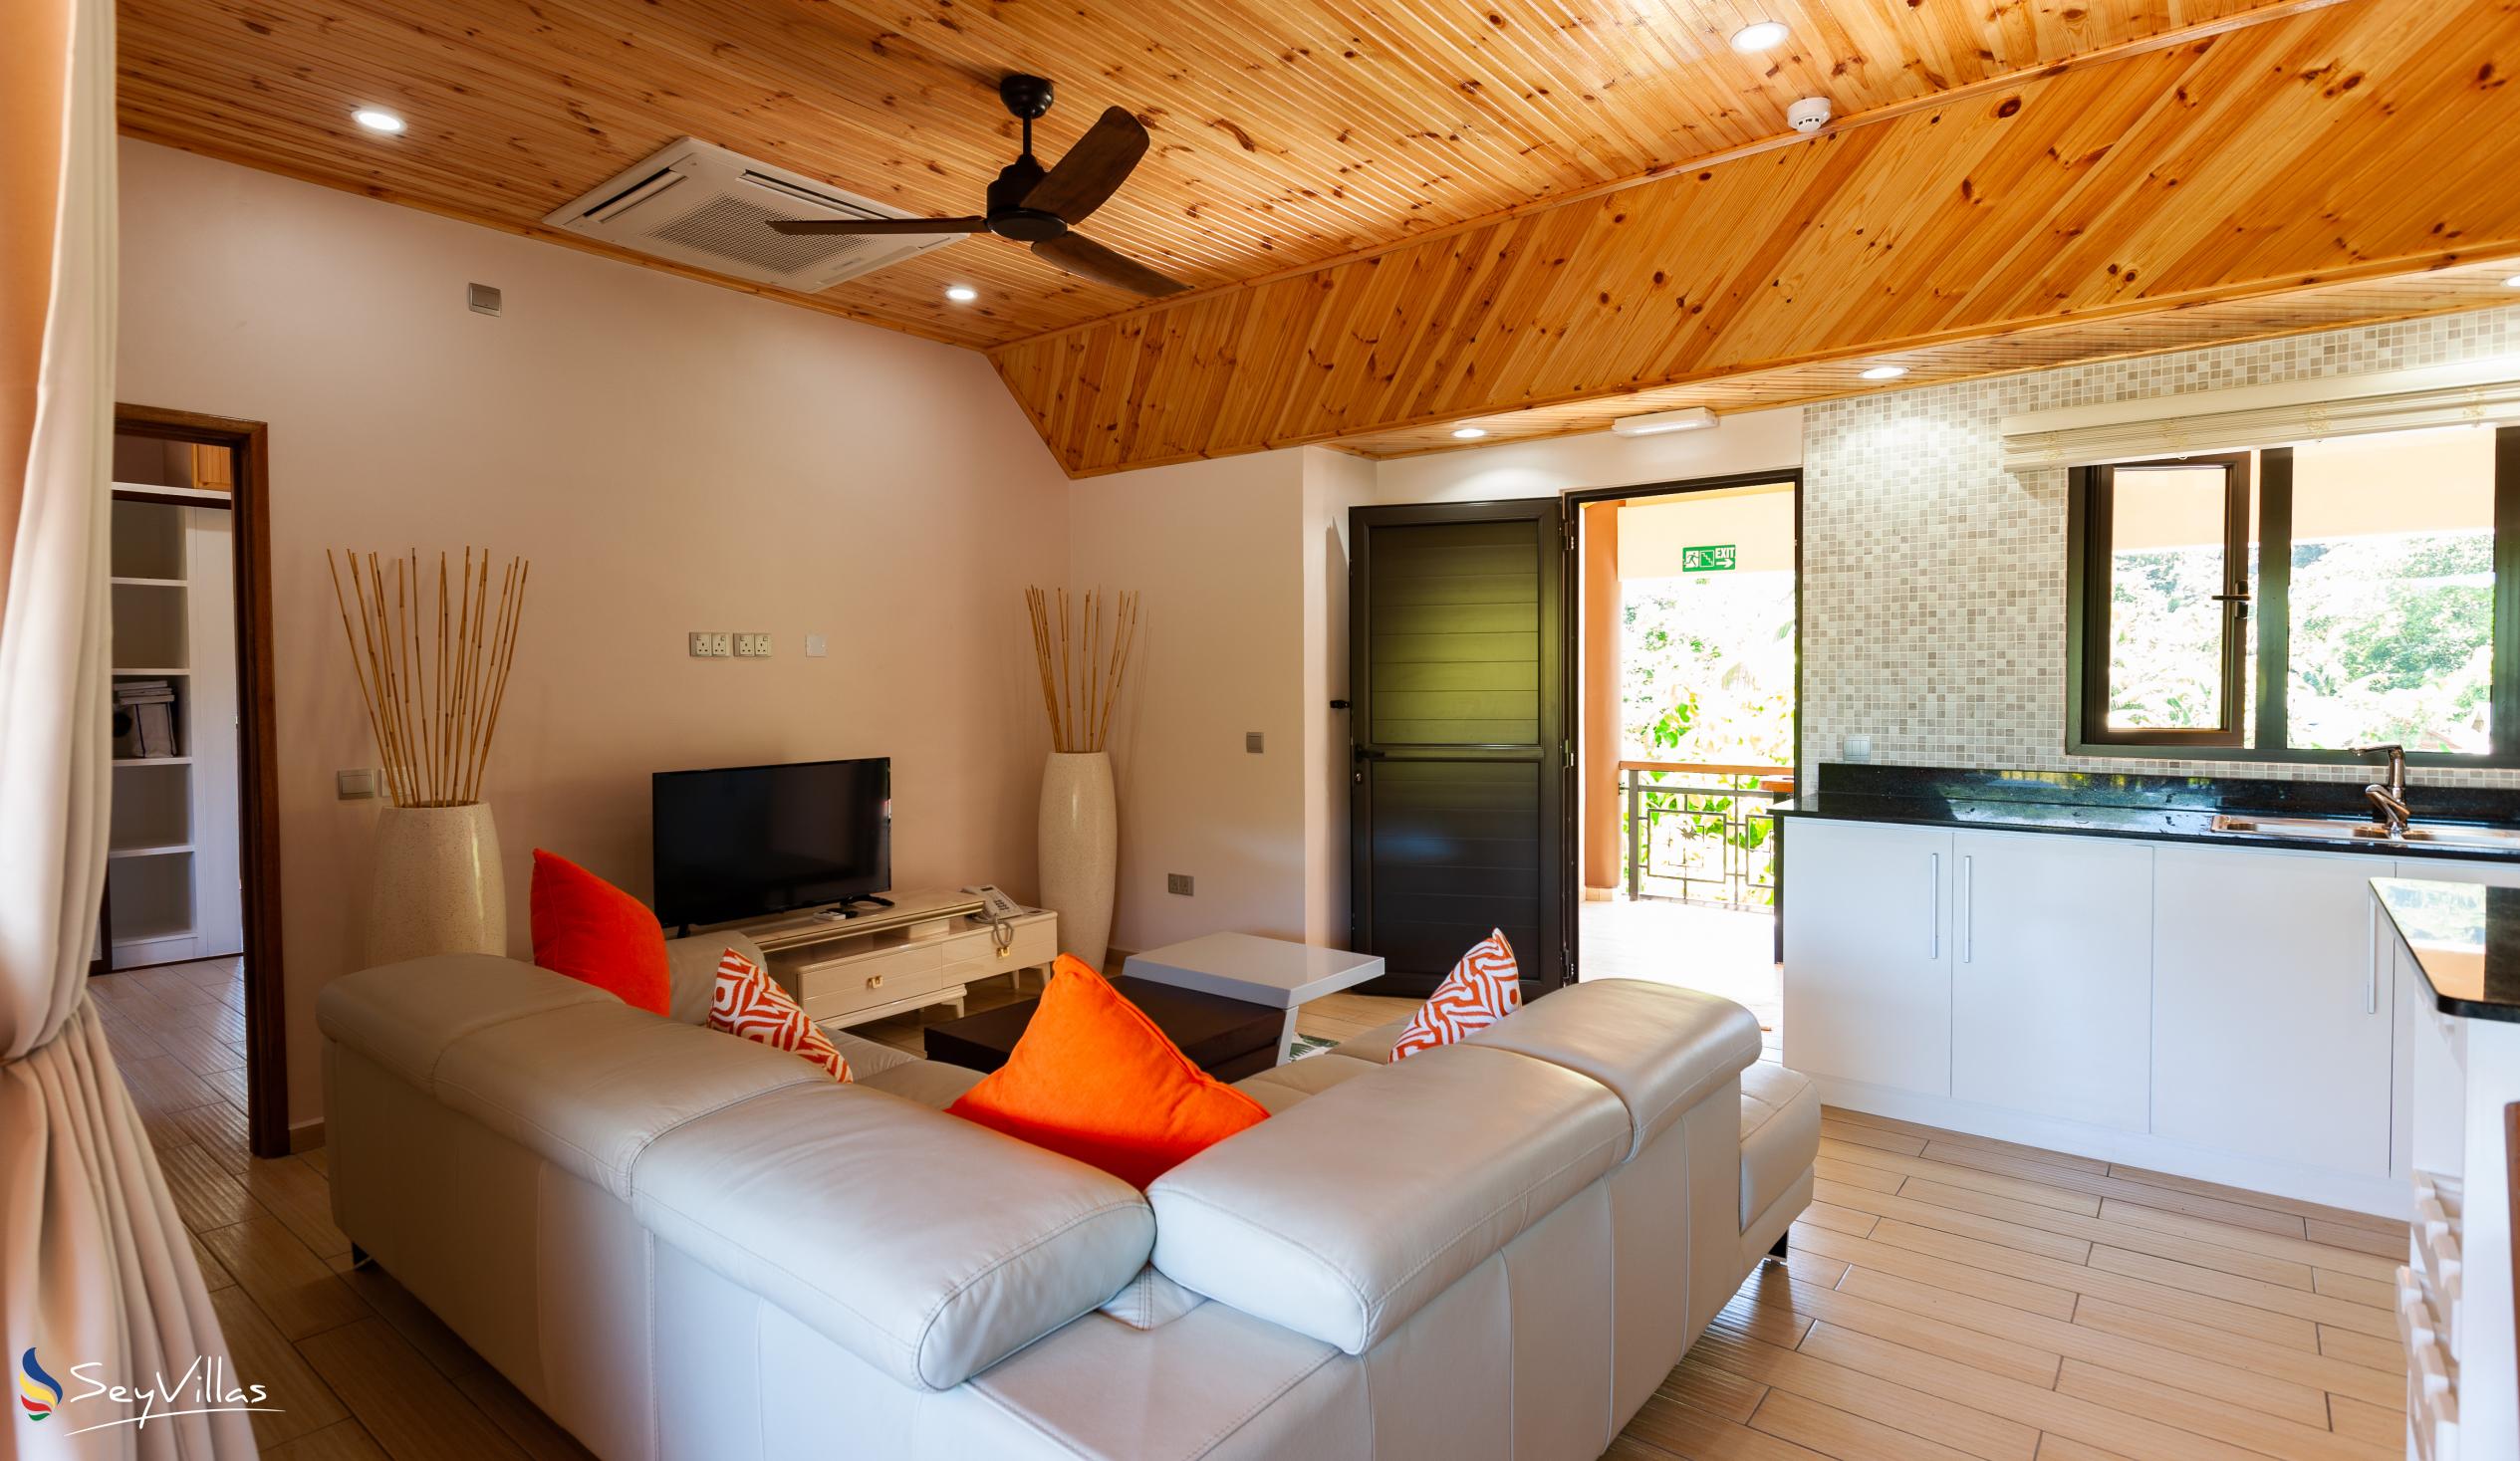 Photo 147: Casa de Leela - Penthouse Apartment - La Digue (Seychelles)